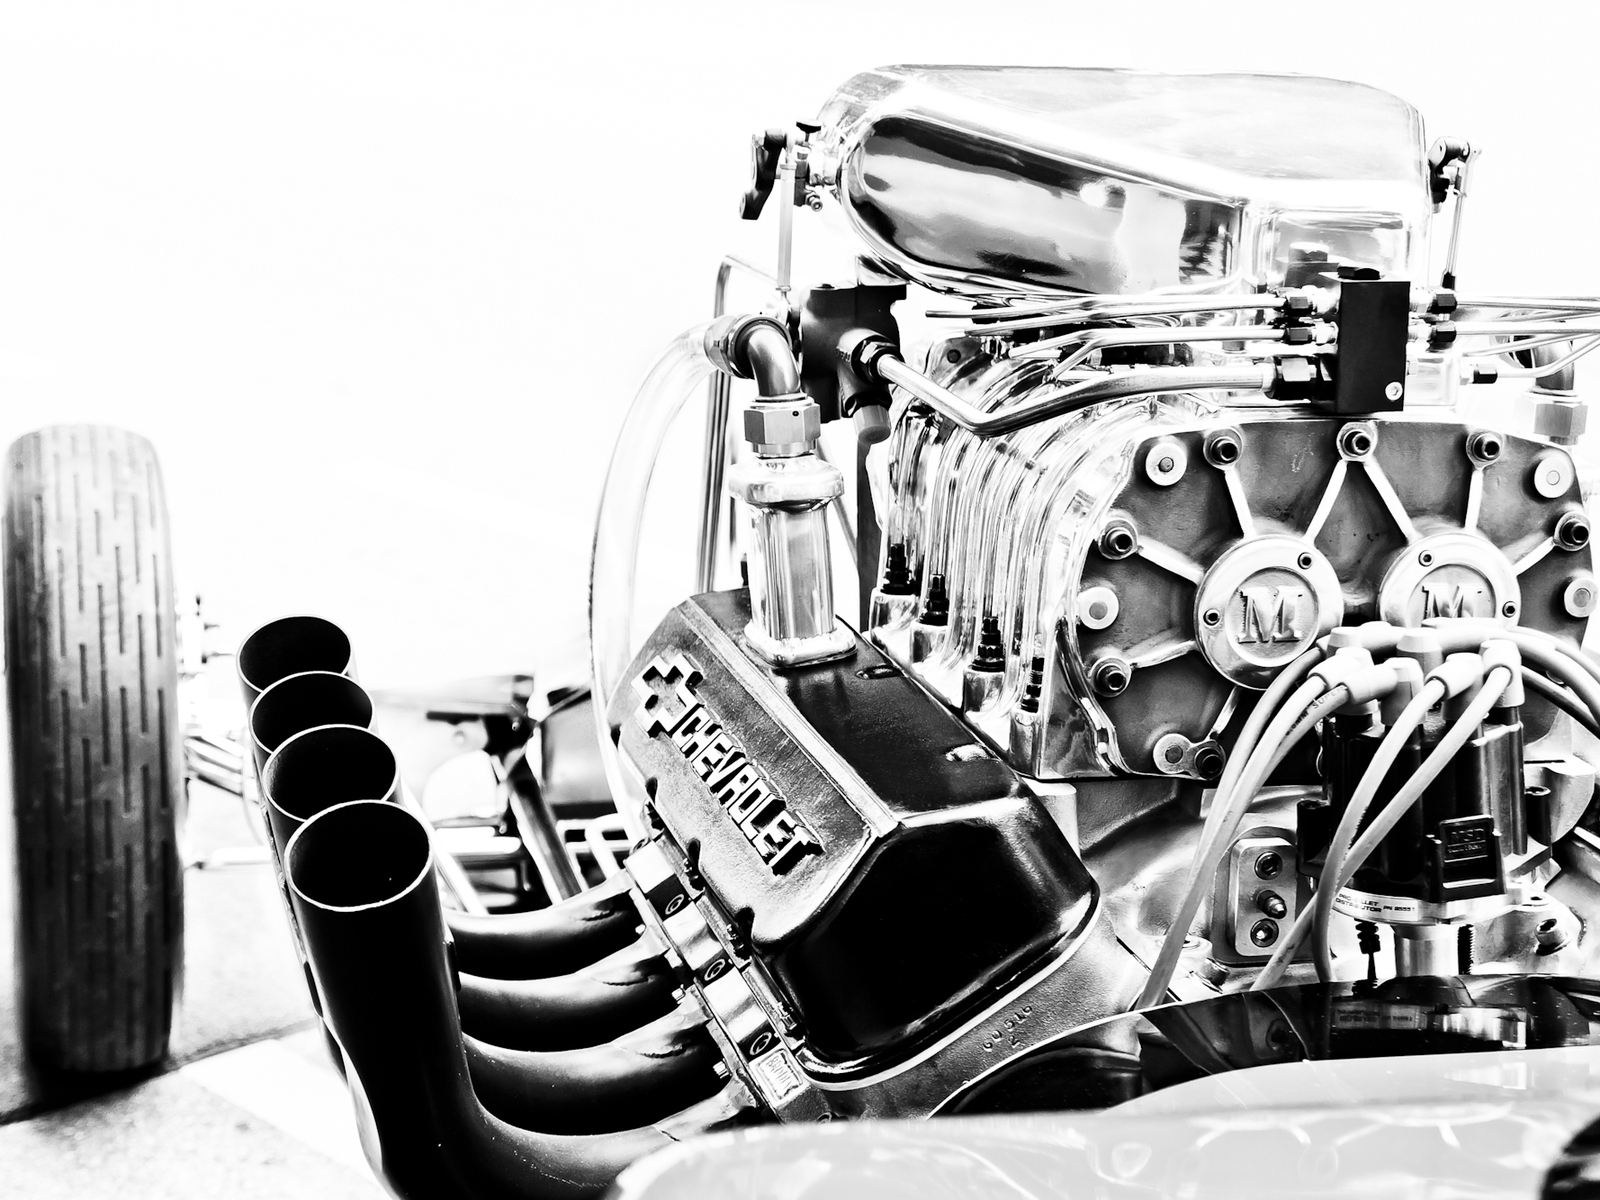 Chevrolet Corvette Engine for 1600 x 1200 resolution